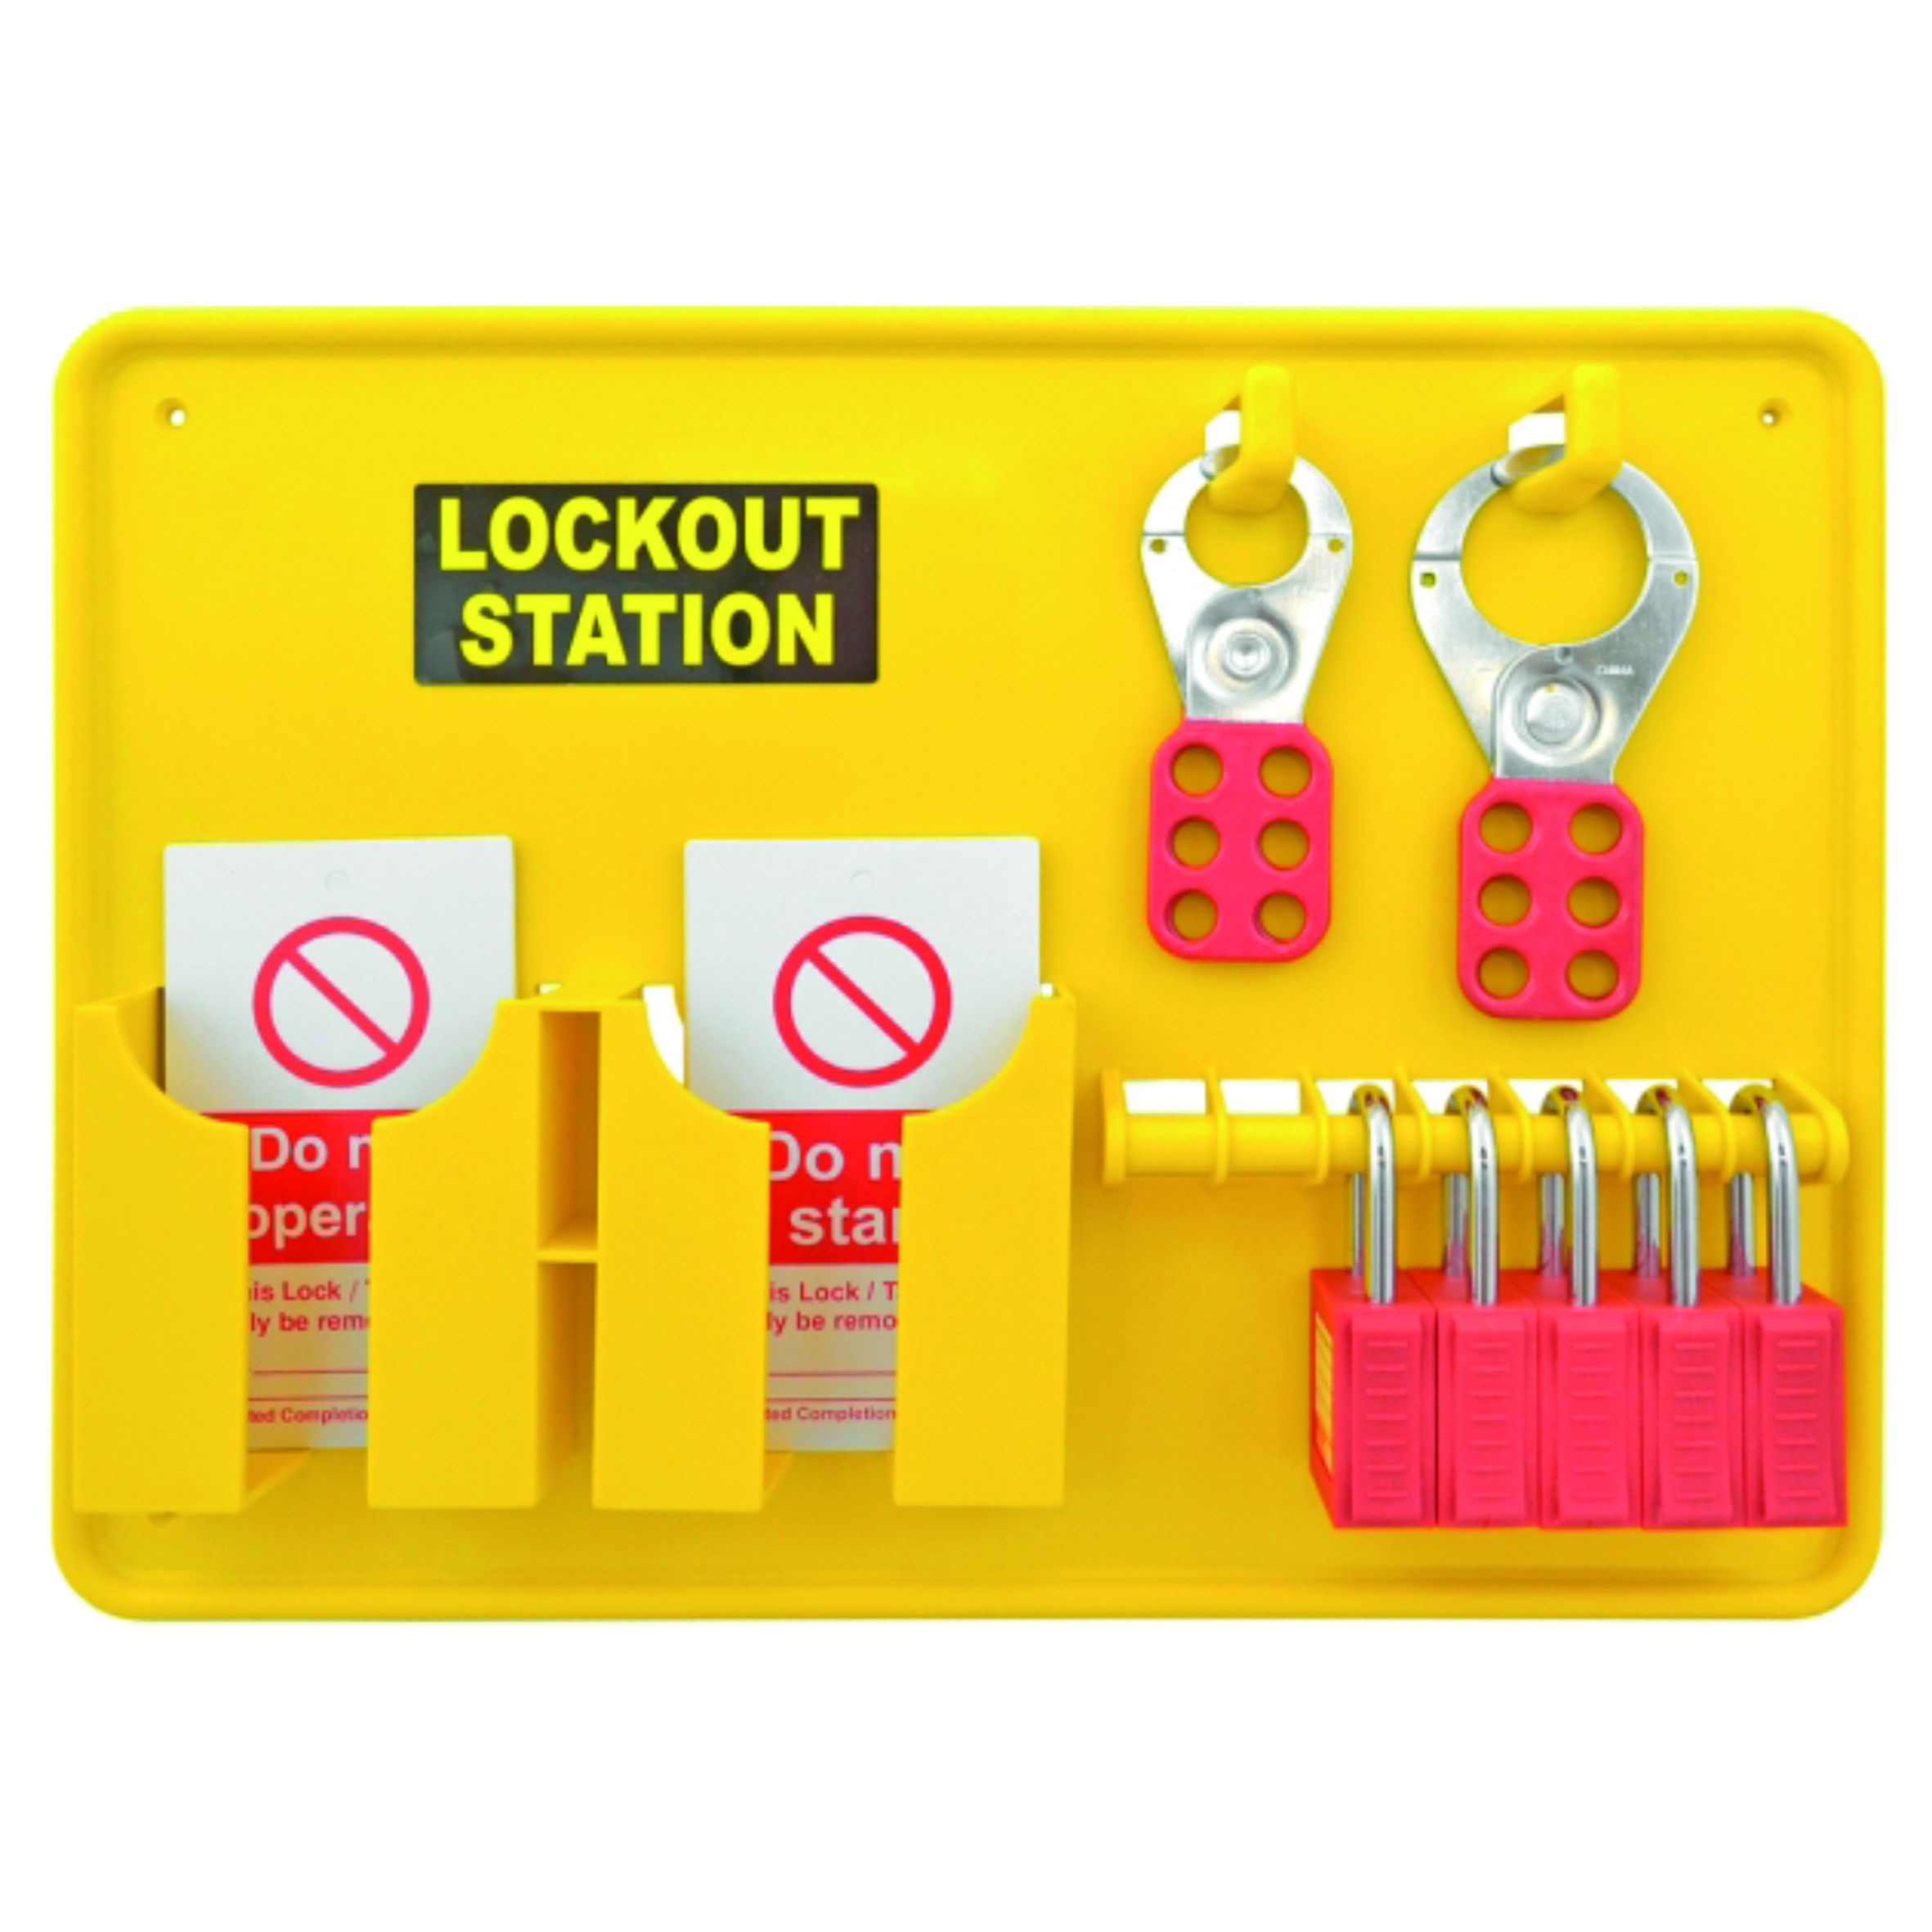 5 Station Lockout Kit